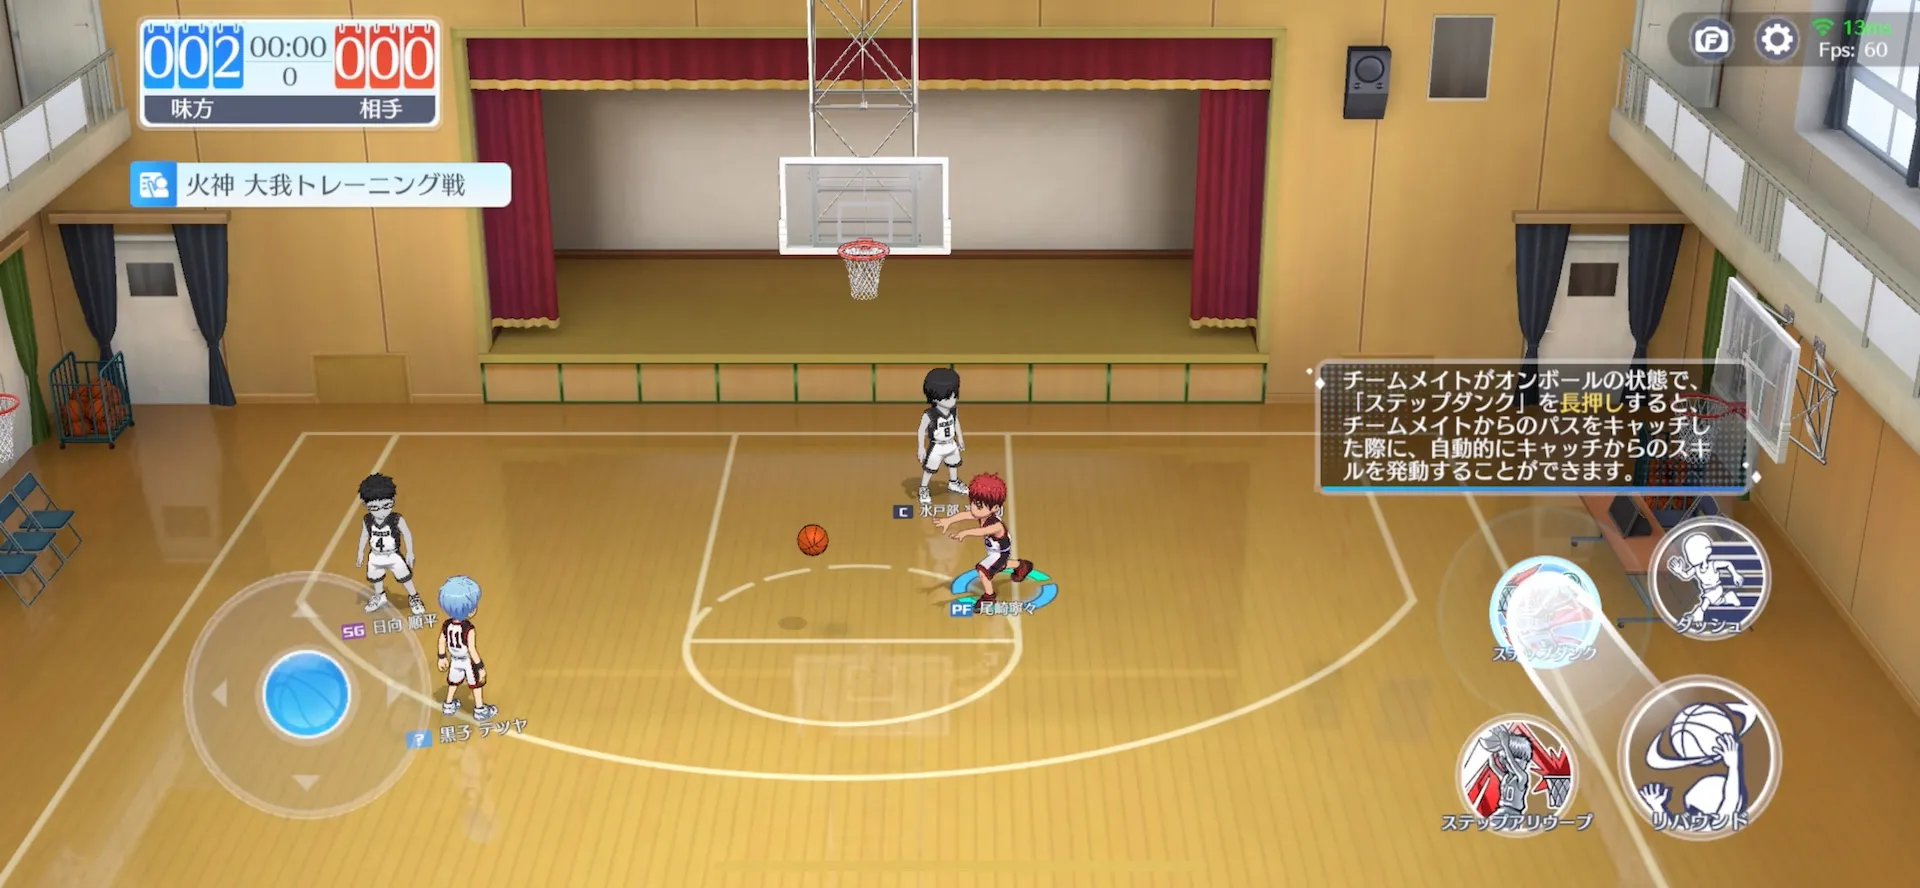 想像以上にアクション性の高い3Dバスケットゲームが楽しめる